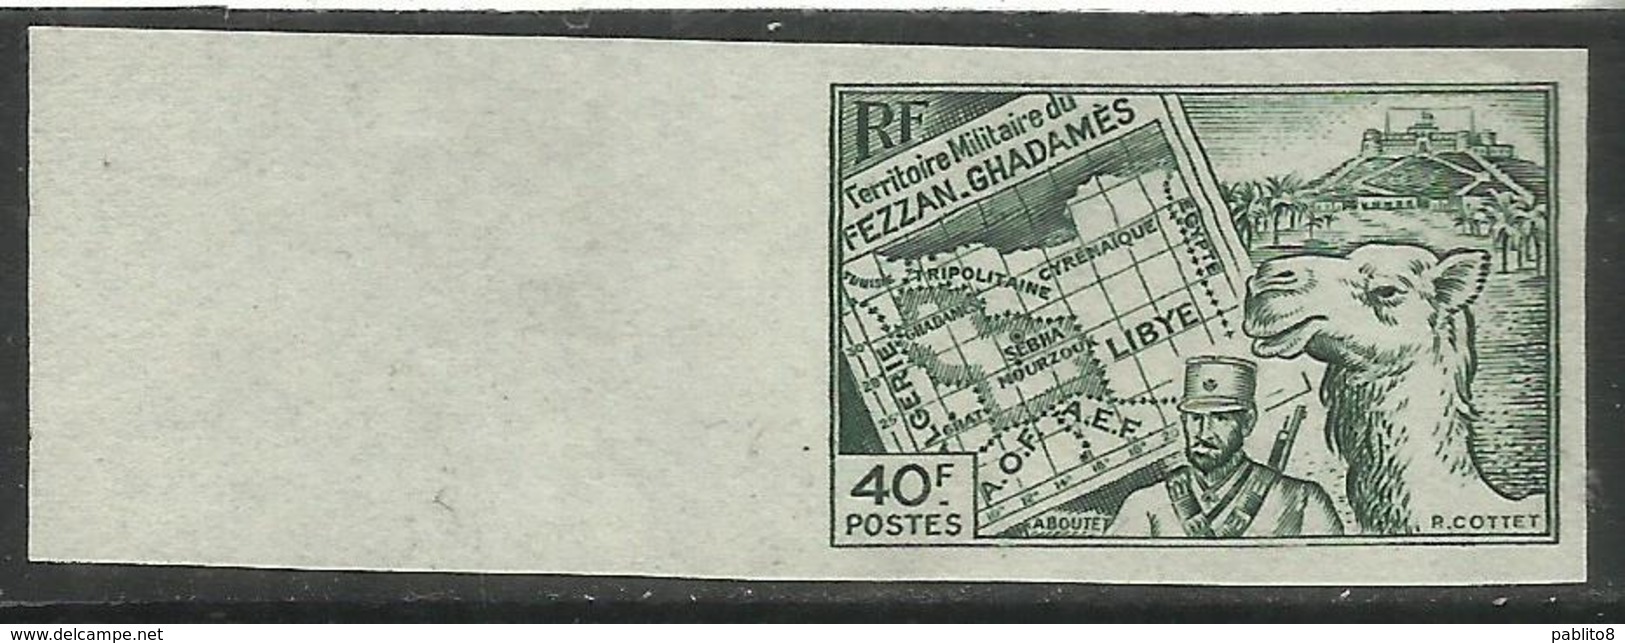 FEZZAN E GHADAMES 1946 TERRITORIO MILITARE CARTA MAP MEHARISTA MEHARIST IMPERF. NON DENTELLATO 40f MNH - Unused Stamps